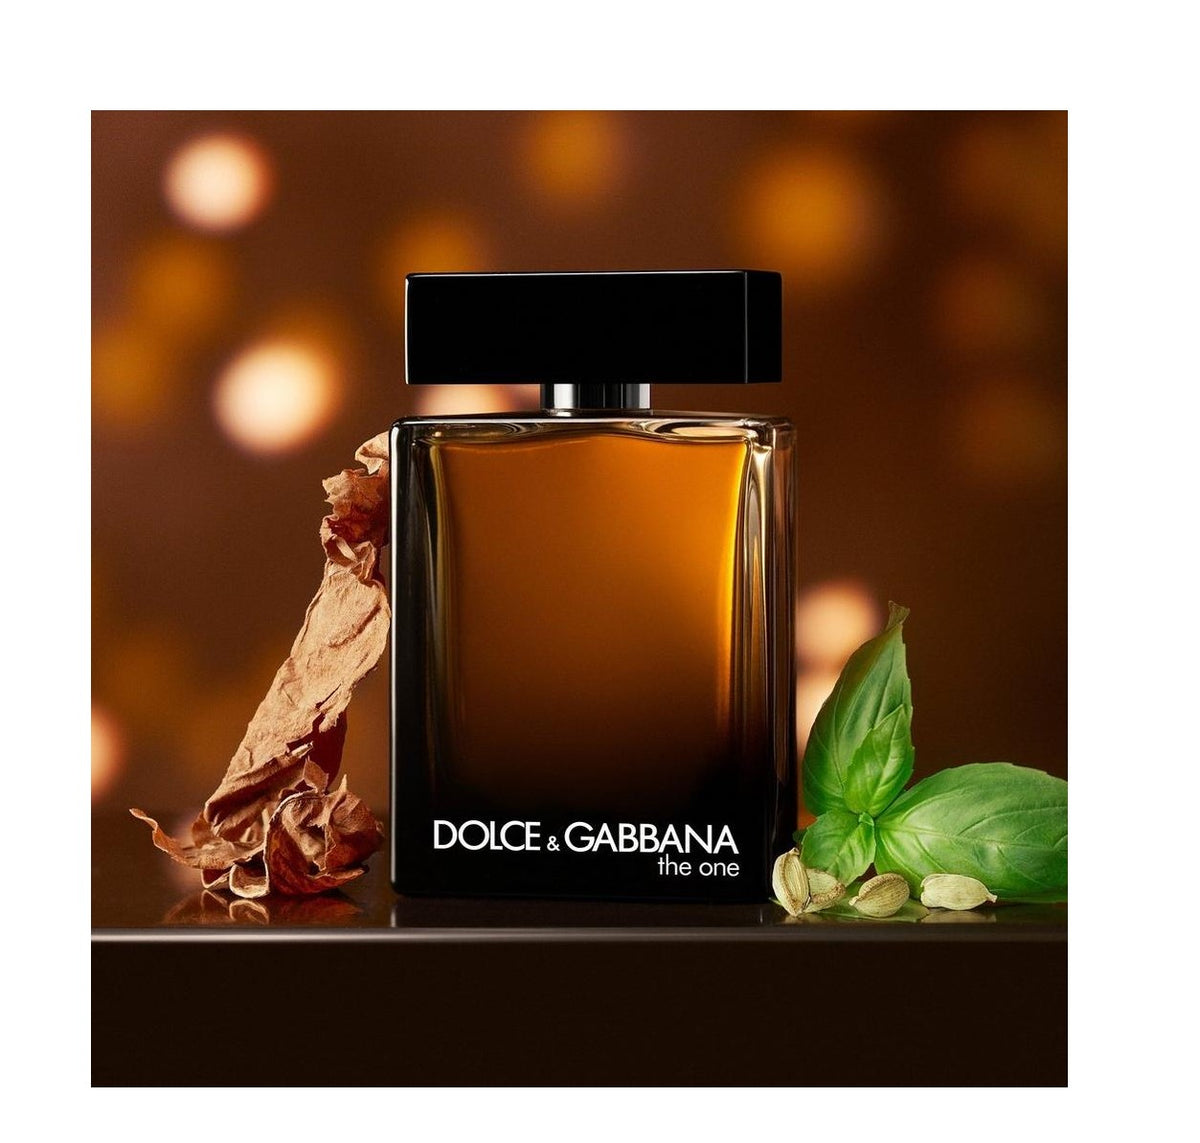 The One for Men by Dolce&Gabbana - Eau de Parfum - 100ML